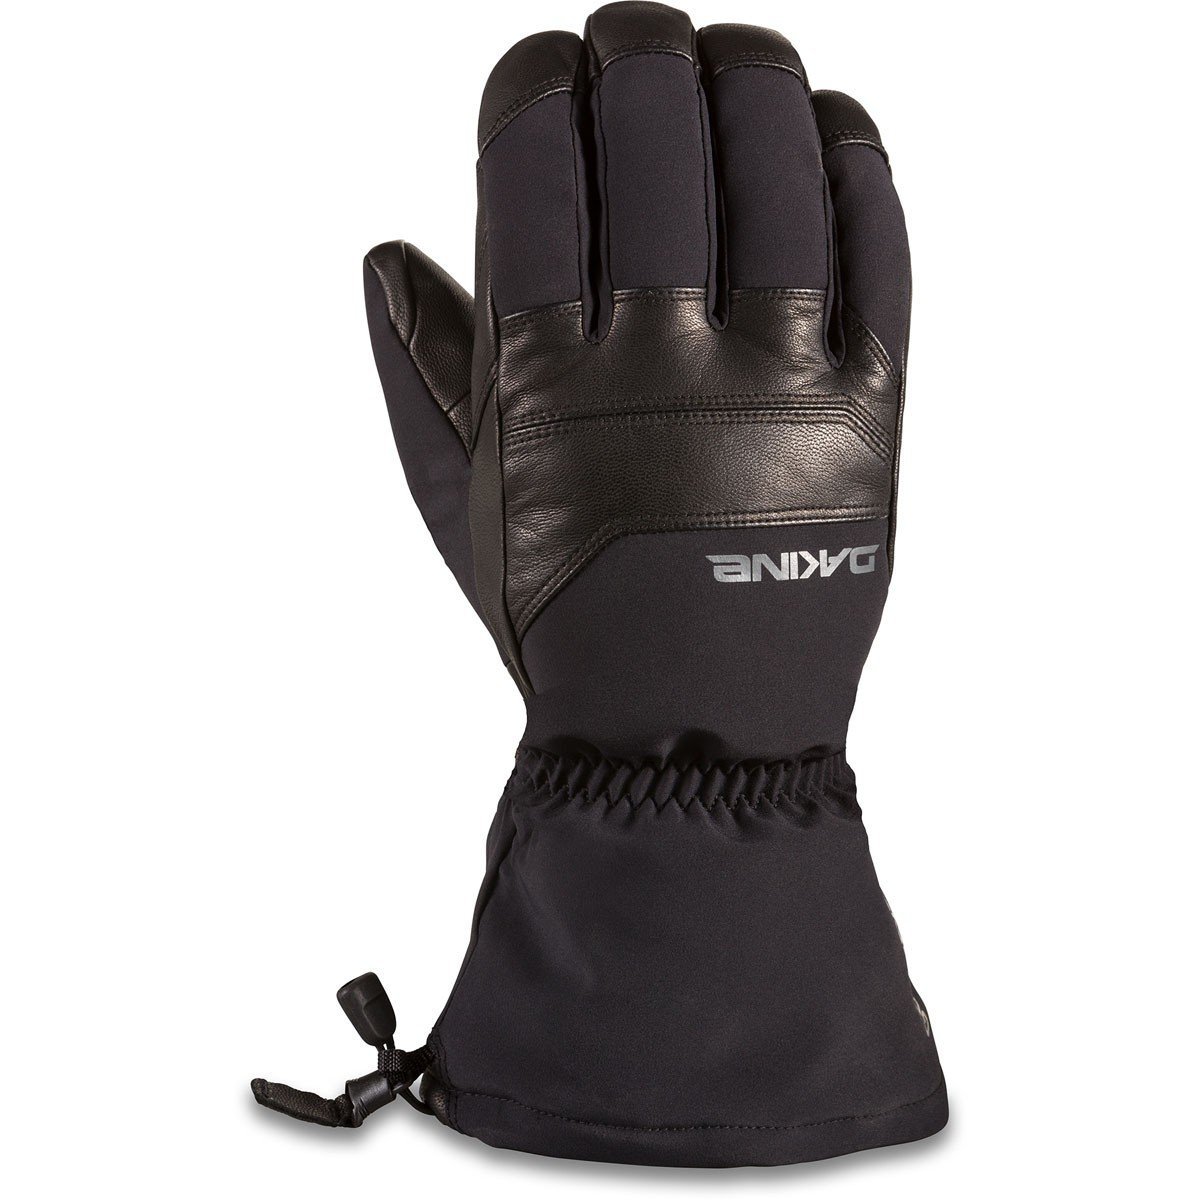 DAKINE Excursion Gore-Tex Glove Black WINTER GLOVES - Men's Snowboard Gloves and Mitts Dakine 